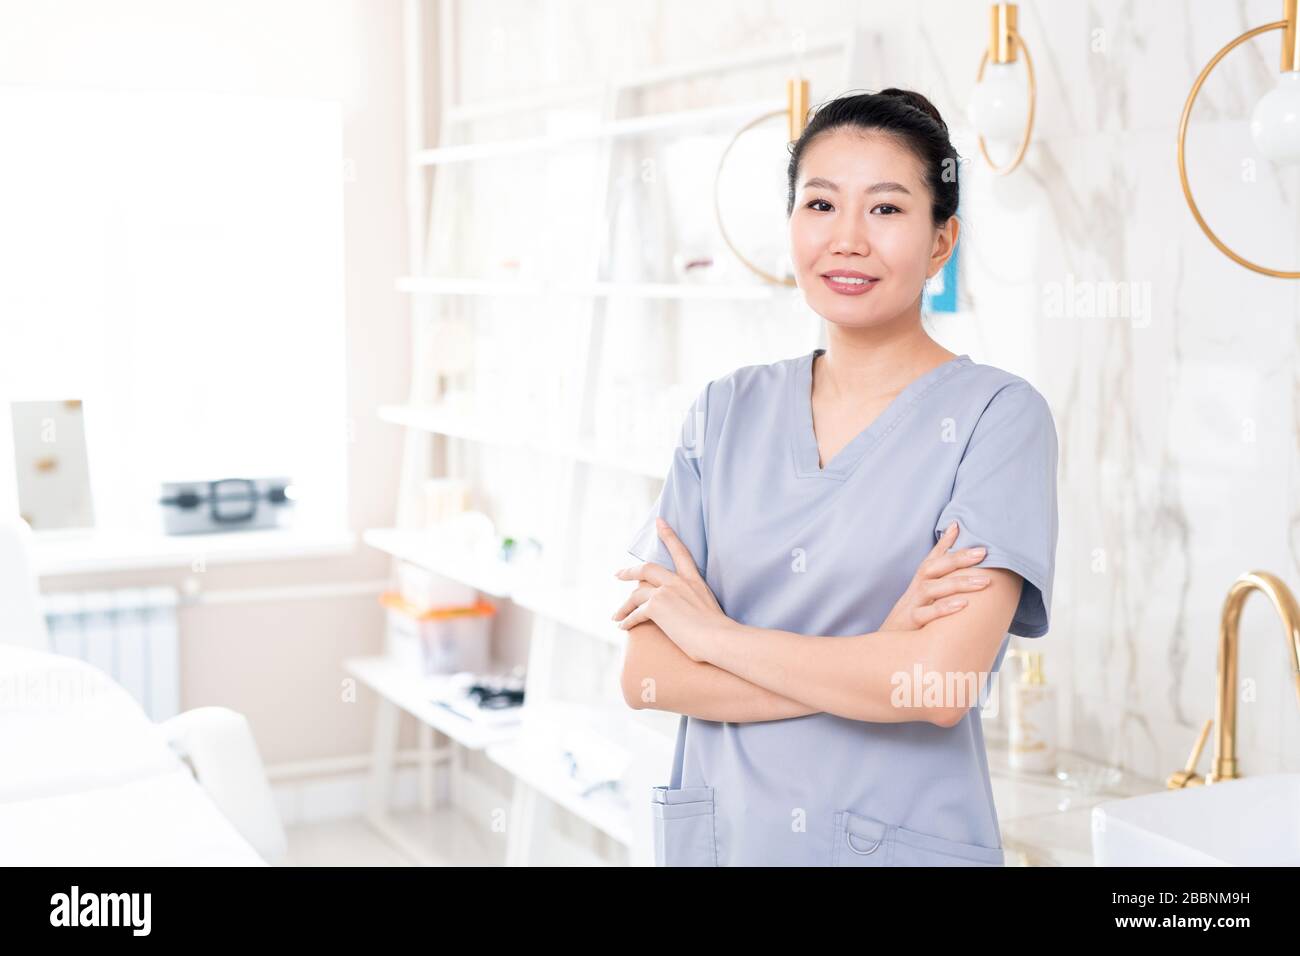 Portrait der positiven asiatischen Kosmetikerin mittleren Alters in Schruben, die mit gekreuzten Armen im Beauty-Behandlungsraum mit modernem Design stehen Stockfoto